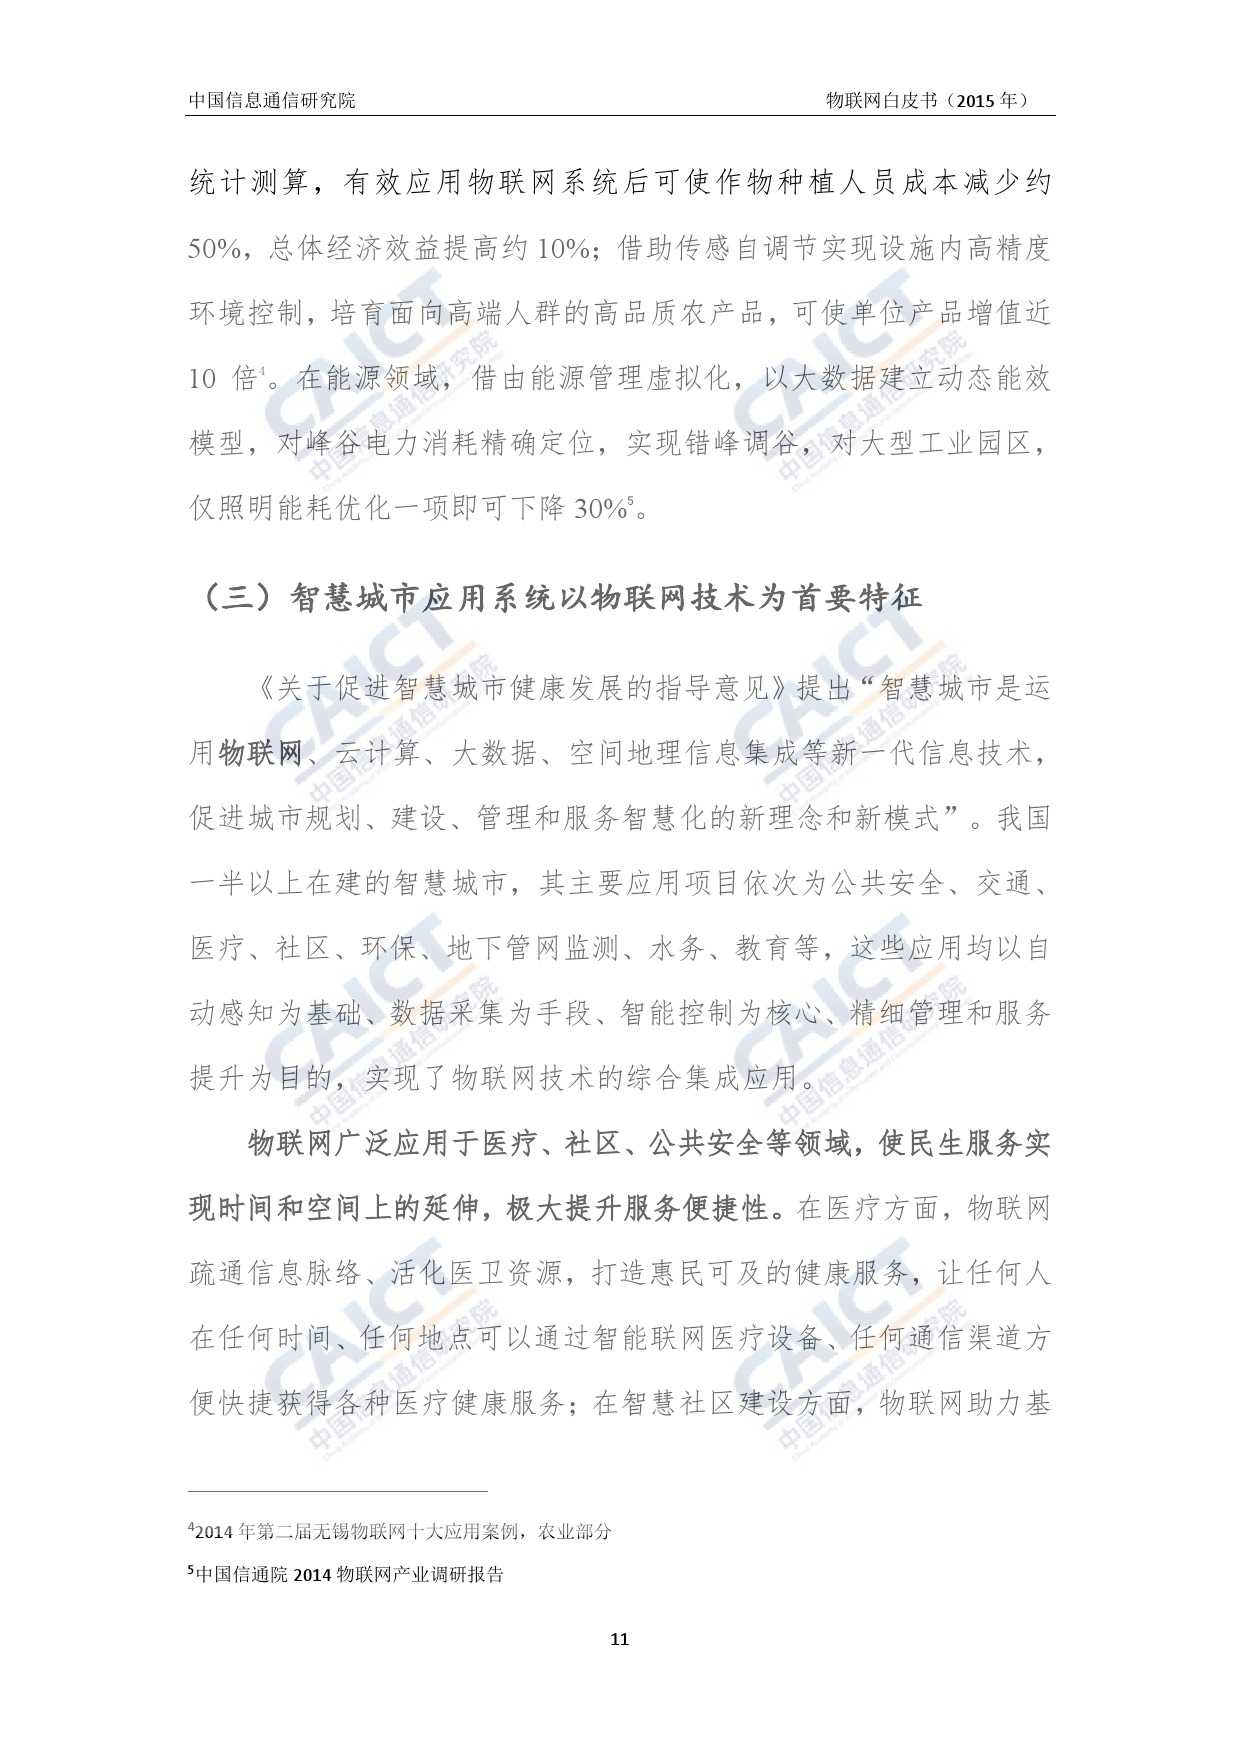 中国信息通信研究院：2015年物联网白皮书_000015